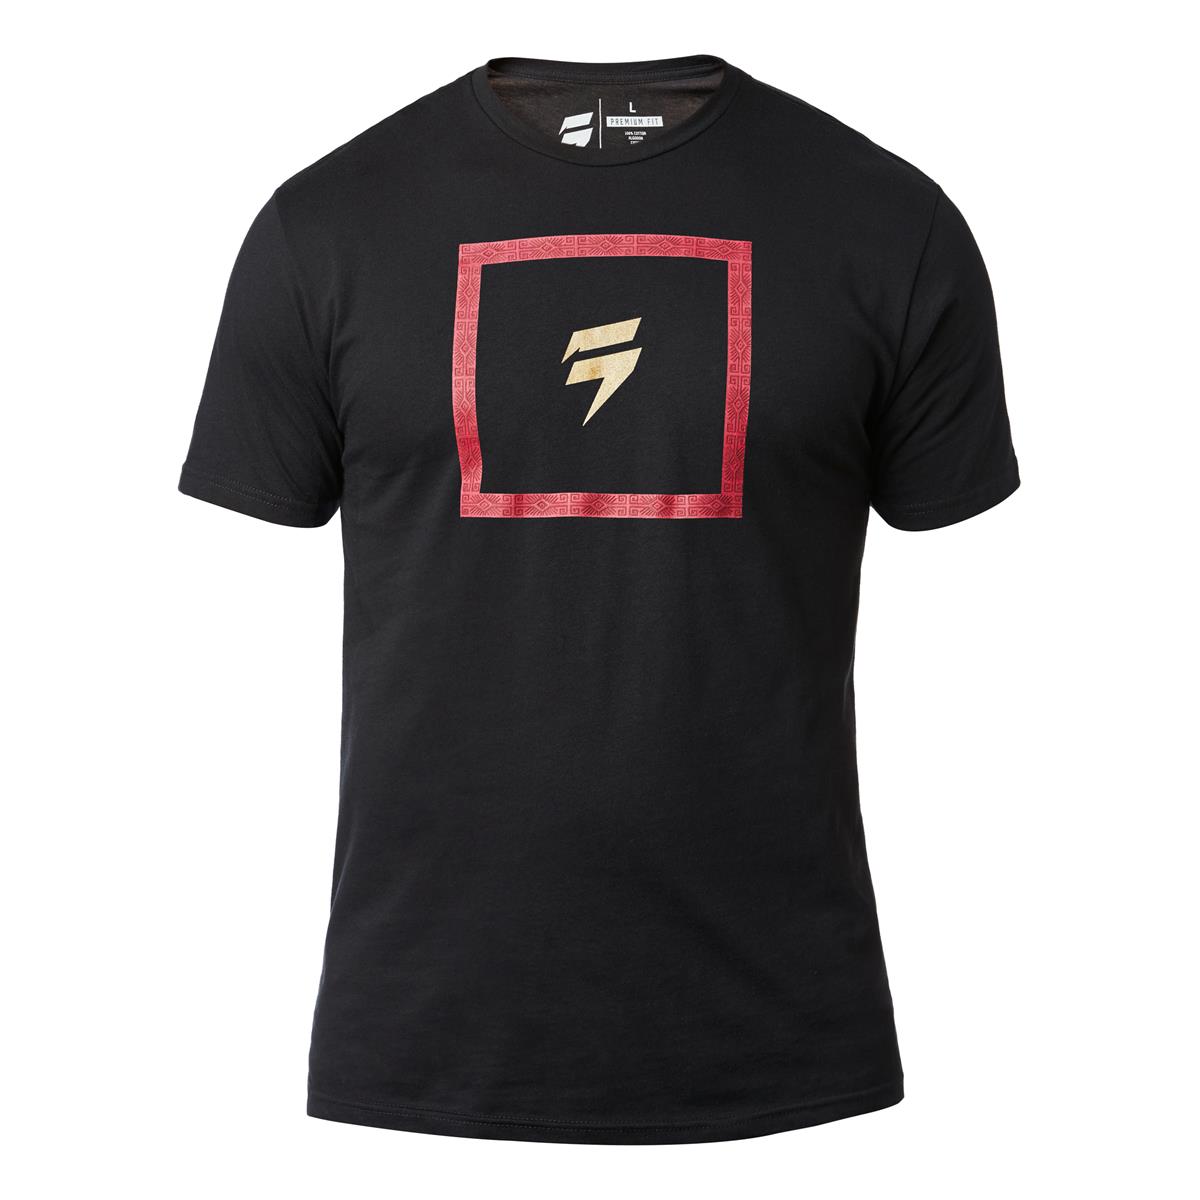 Shift T-Shirt 3lack Label Schwarz - Special Edition Muerte